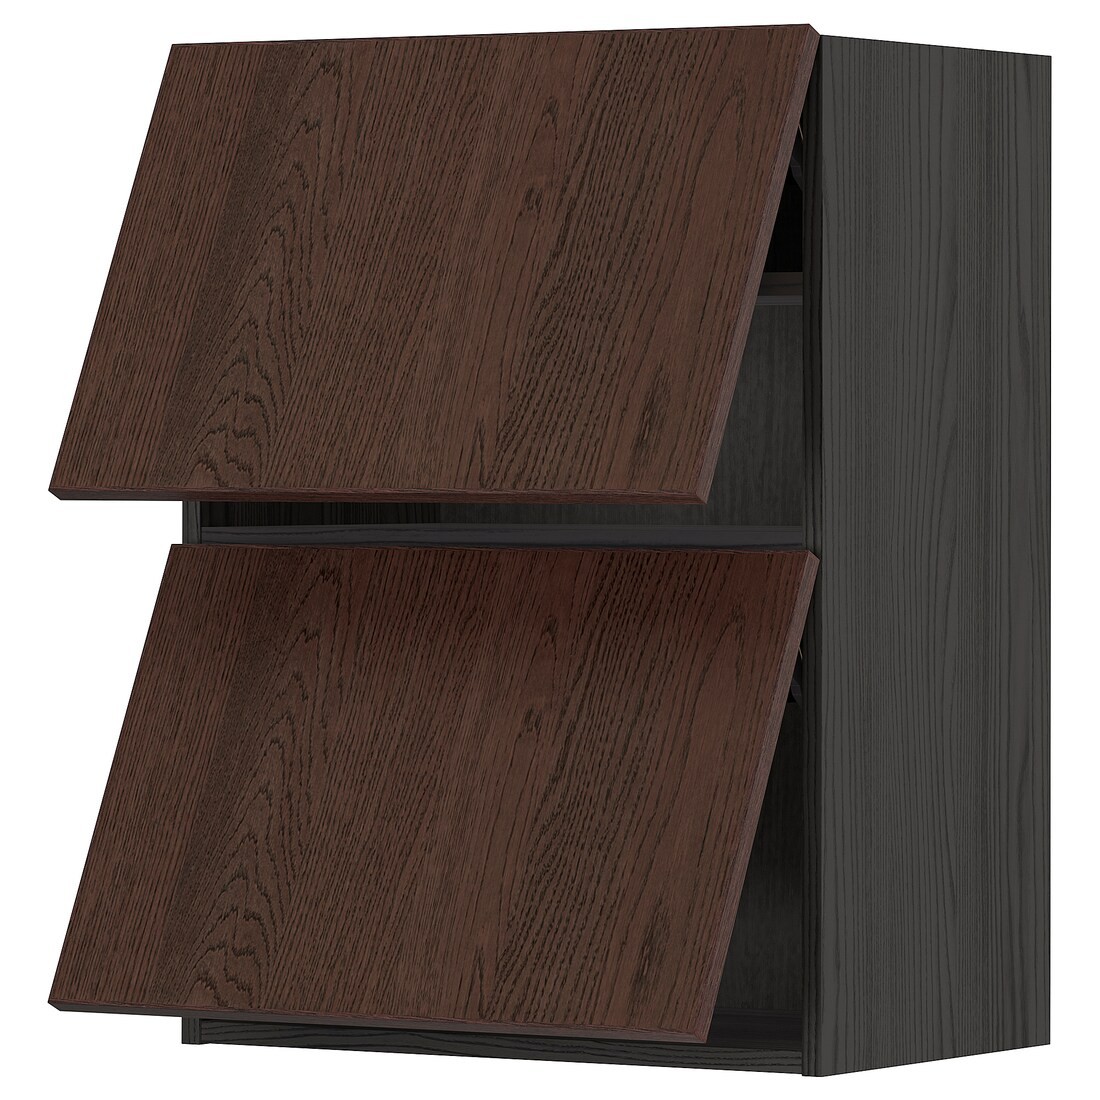 METOD МЕТОД Навесной горизонтальный шкаф / 2двери, нажимной механизм, черный / Sinarp коричневый, 60x80 см